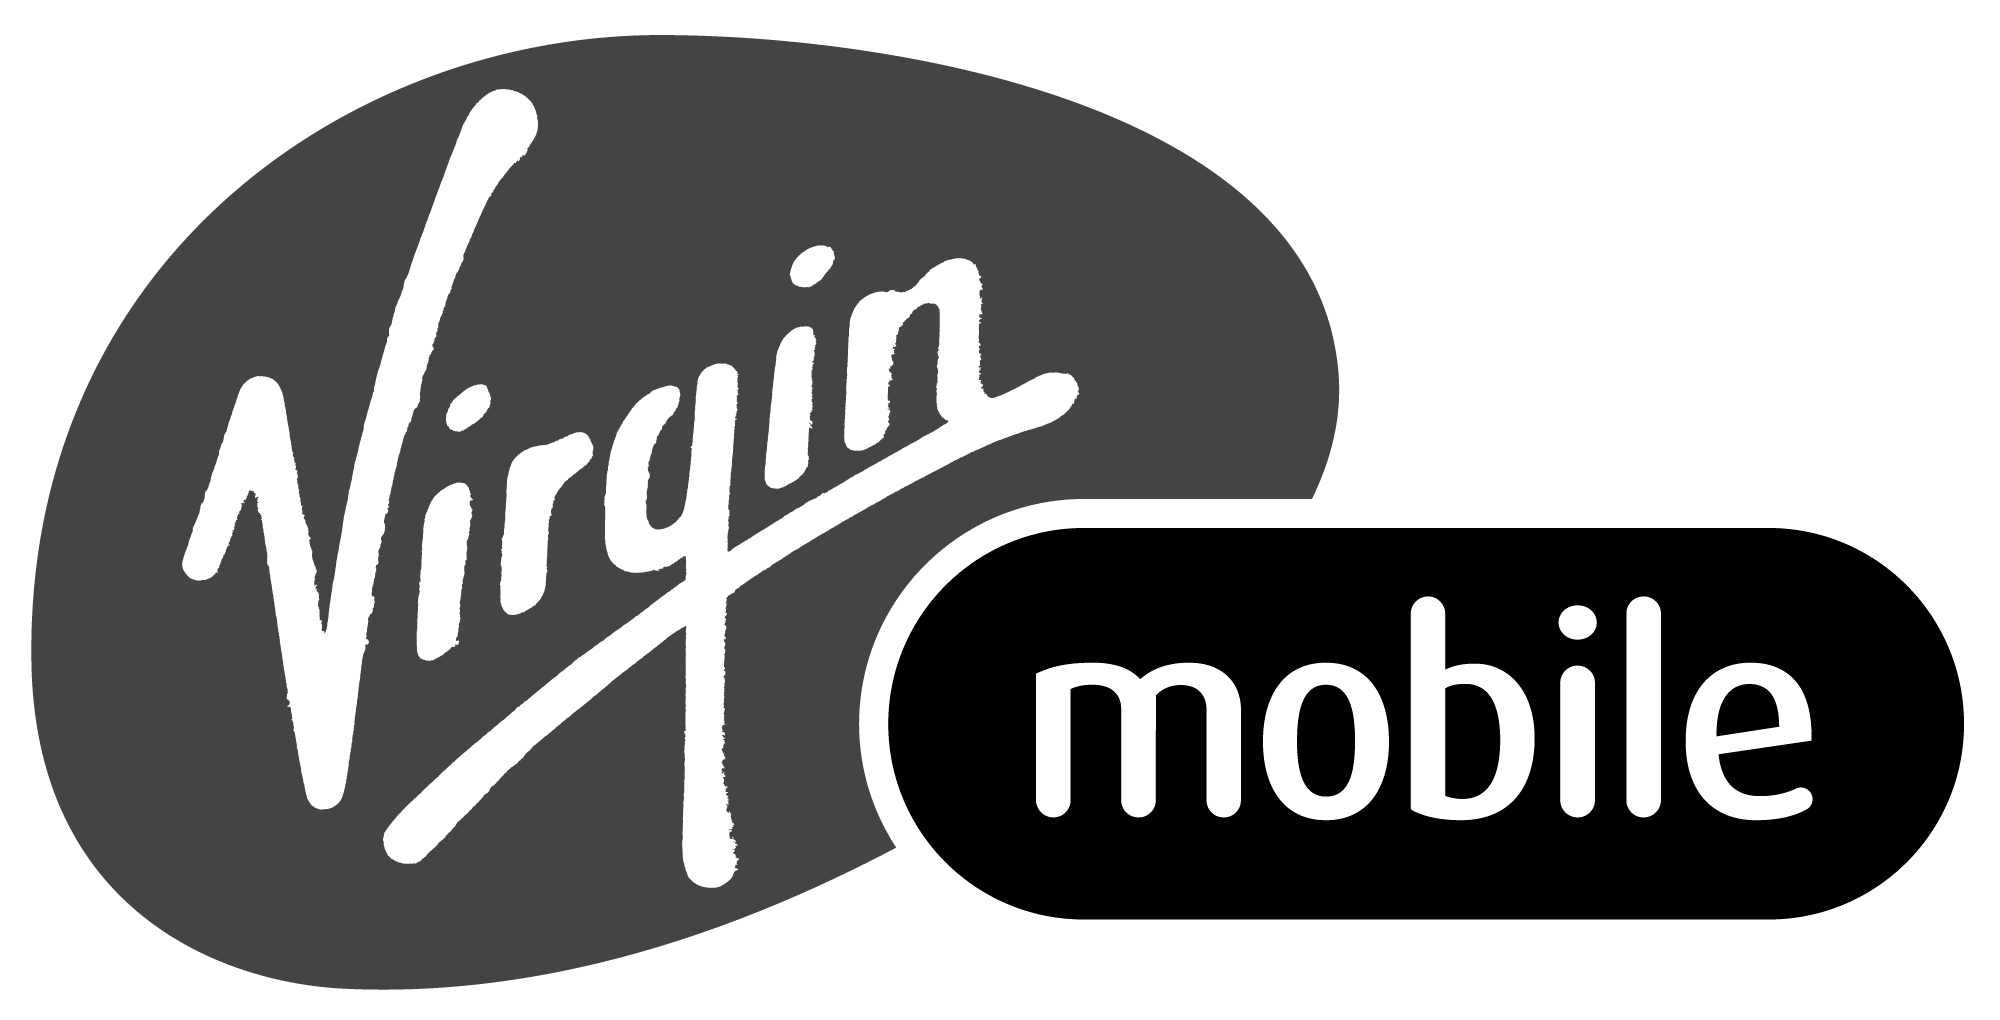 Virgin_Mobile logo.gif